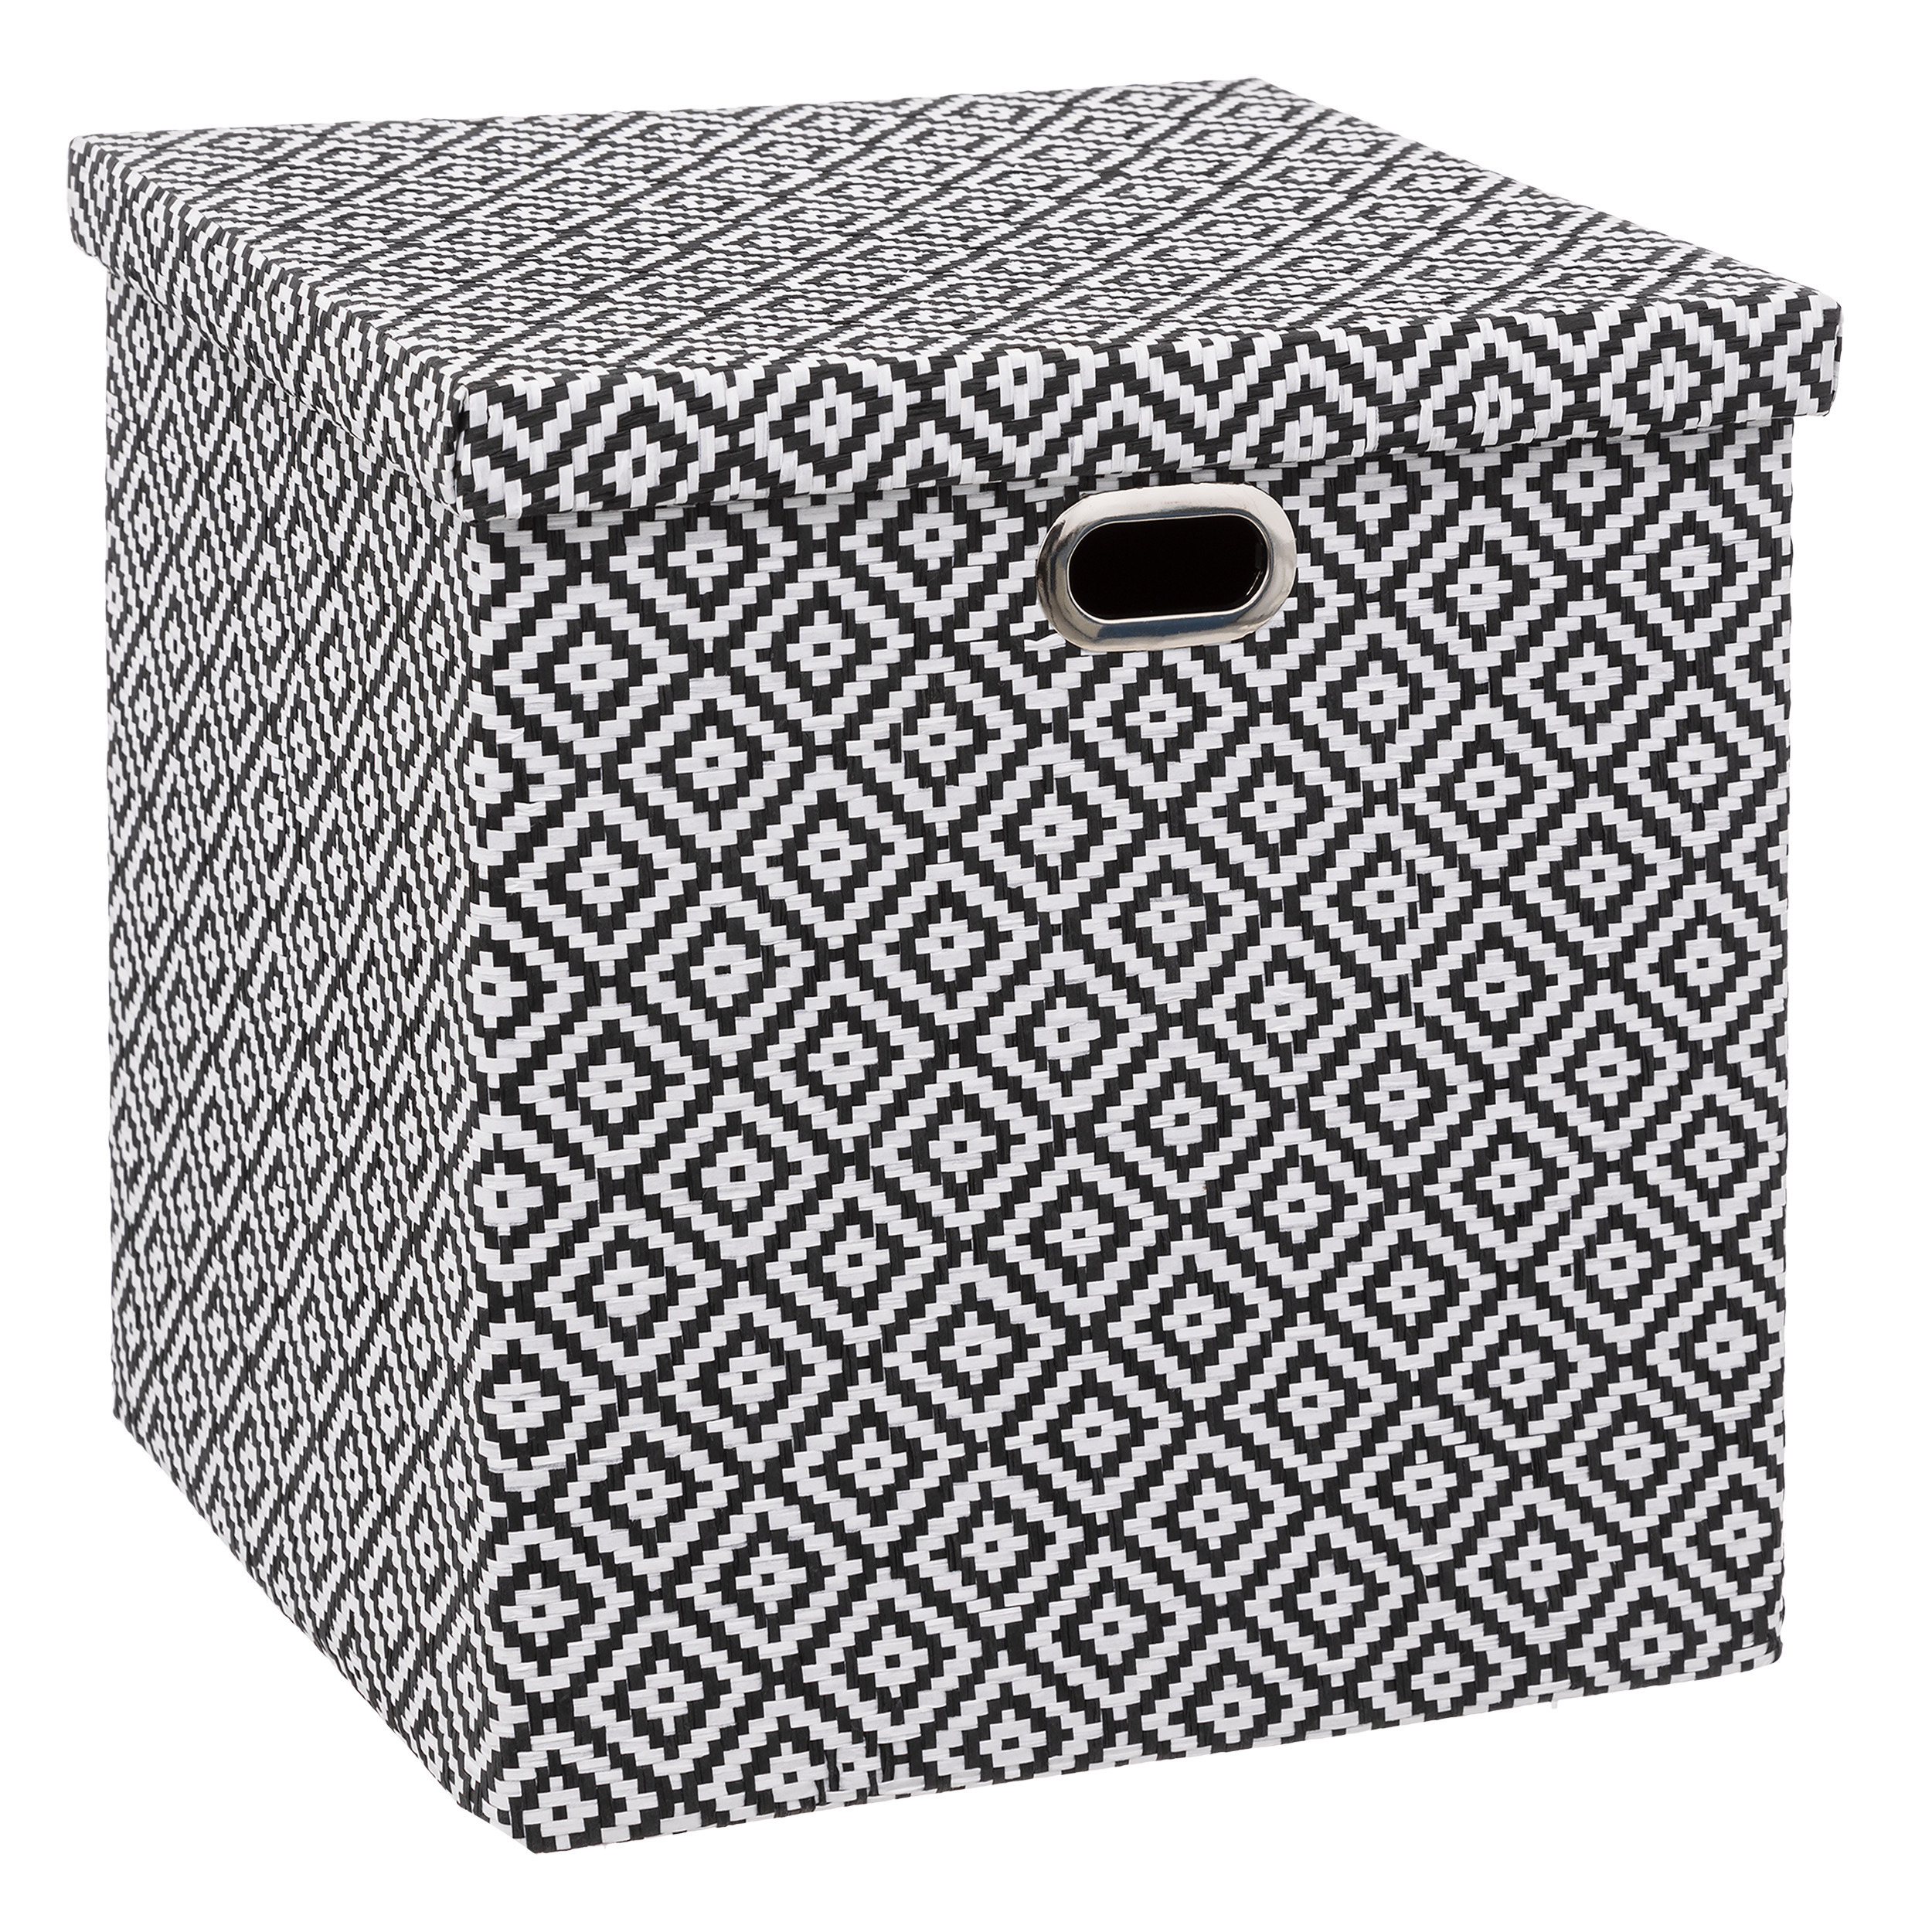 Opbergmand-kastmand karton-kunststof 29 liter zwart-wit 31 x 31 x 31 cm